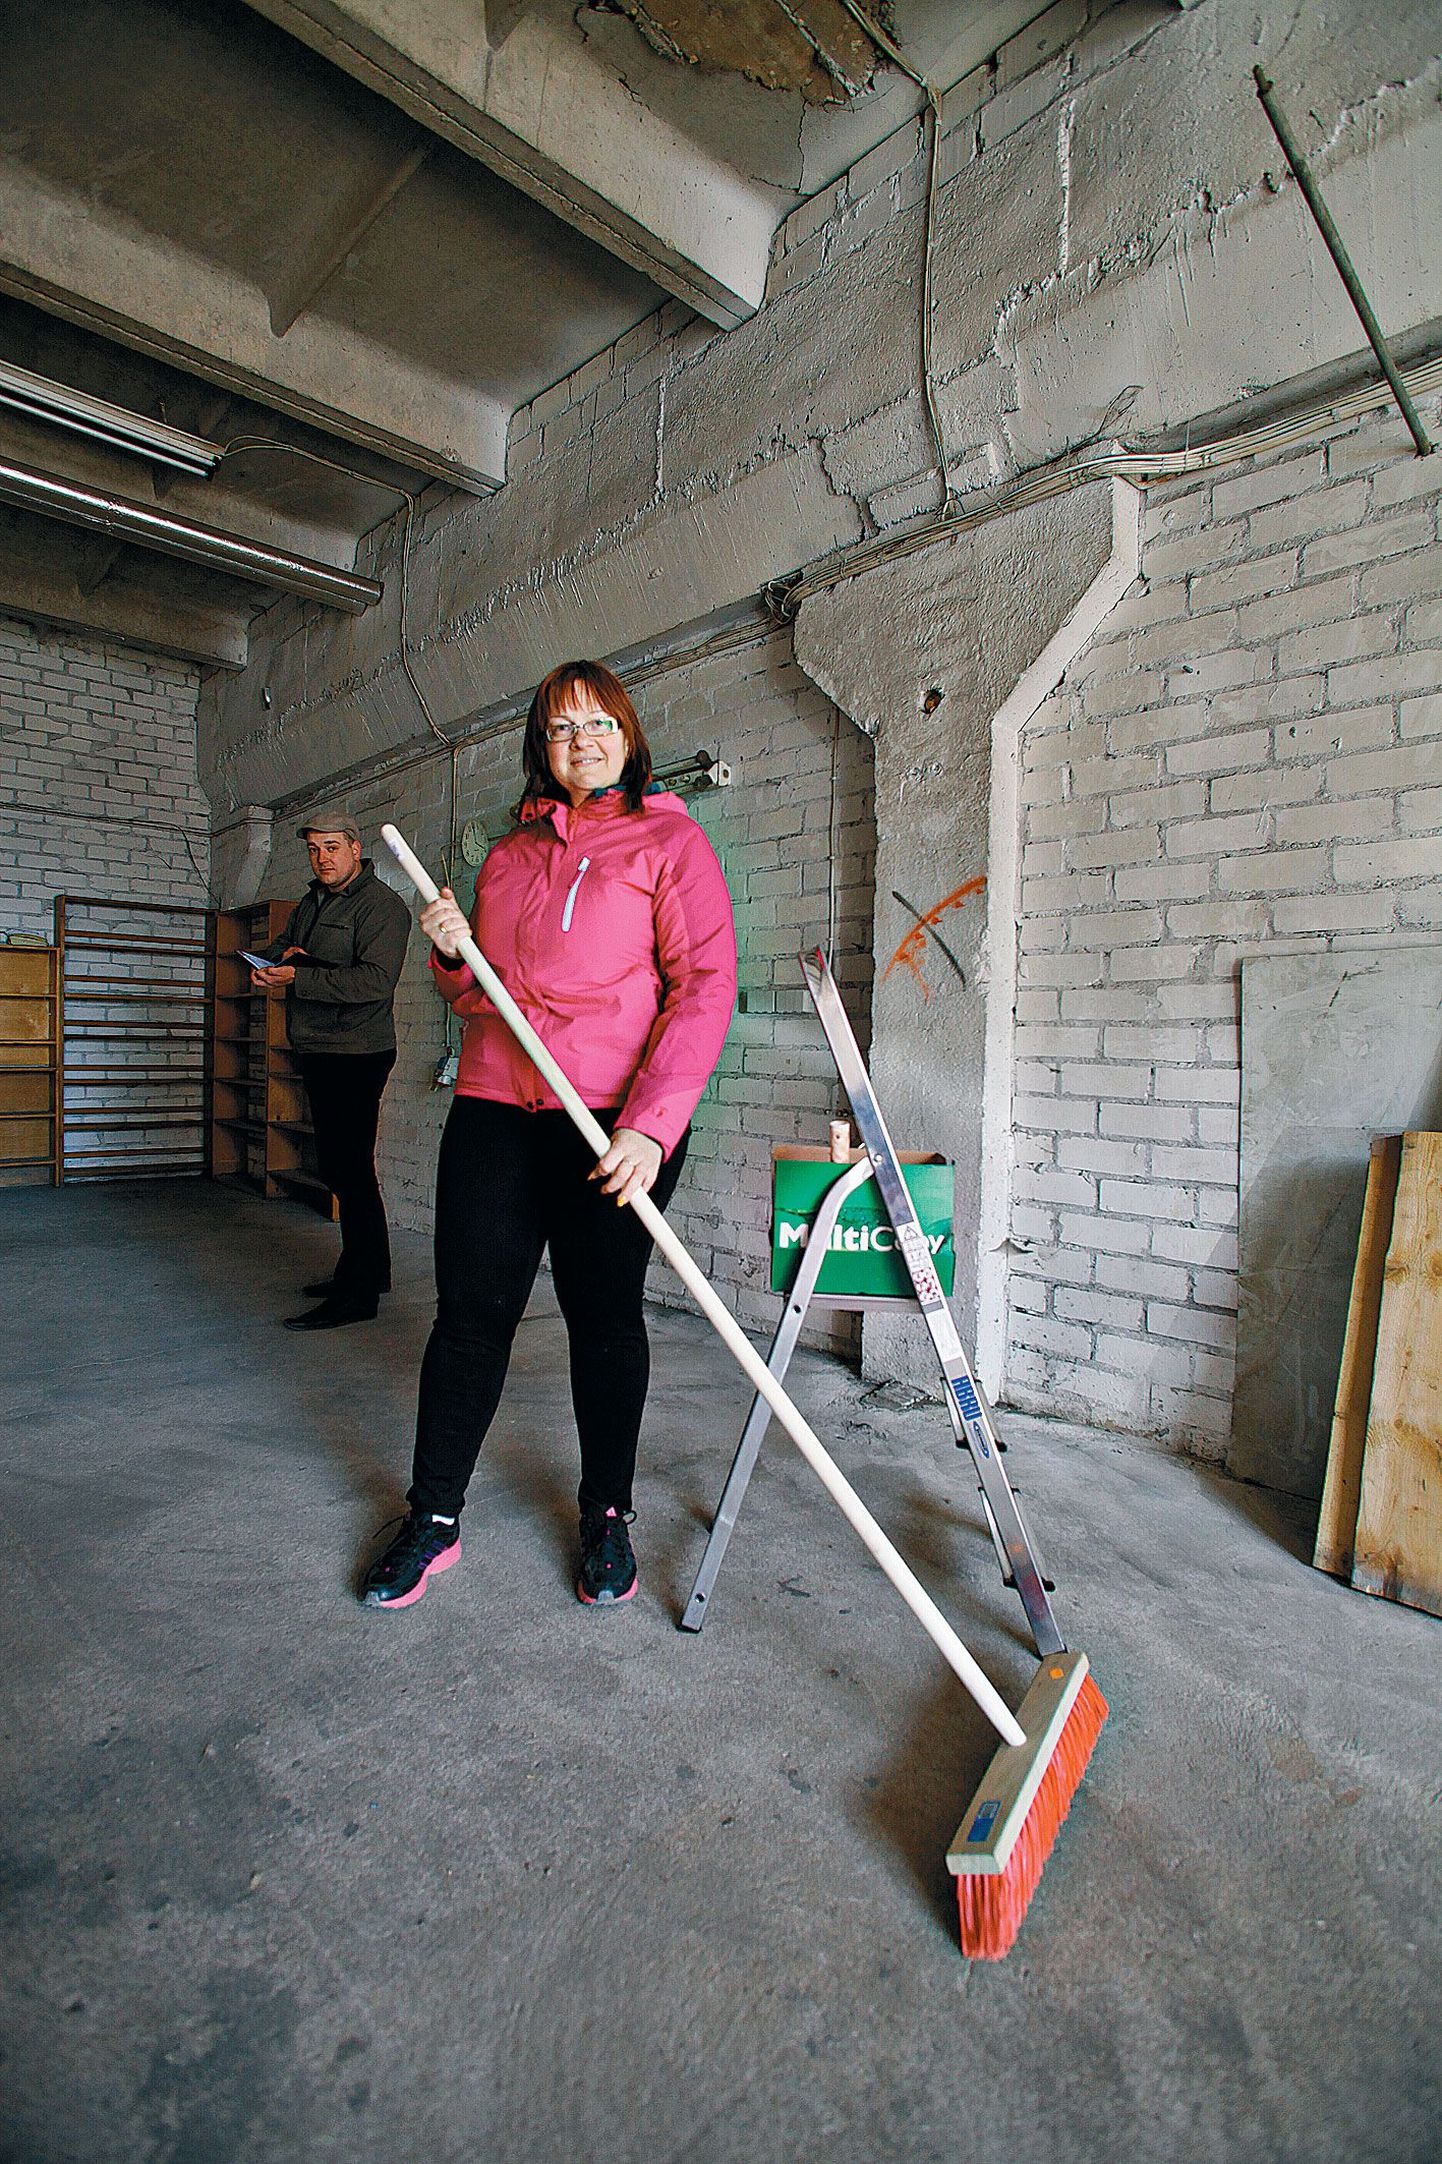 Toidupanga koordineerija Tiina Grauberg on uue laoruumi põranda puhtaks pühkinud, tagaplaanil arvutab seinte värskendamiseks kuluva värvi kilosid kokku OÜ Eskaro müügijuht Airis Lellep.